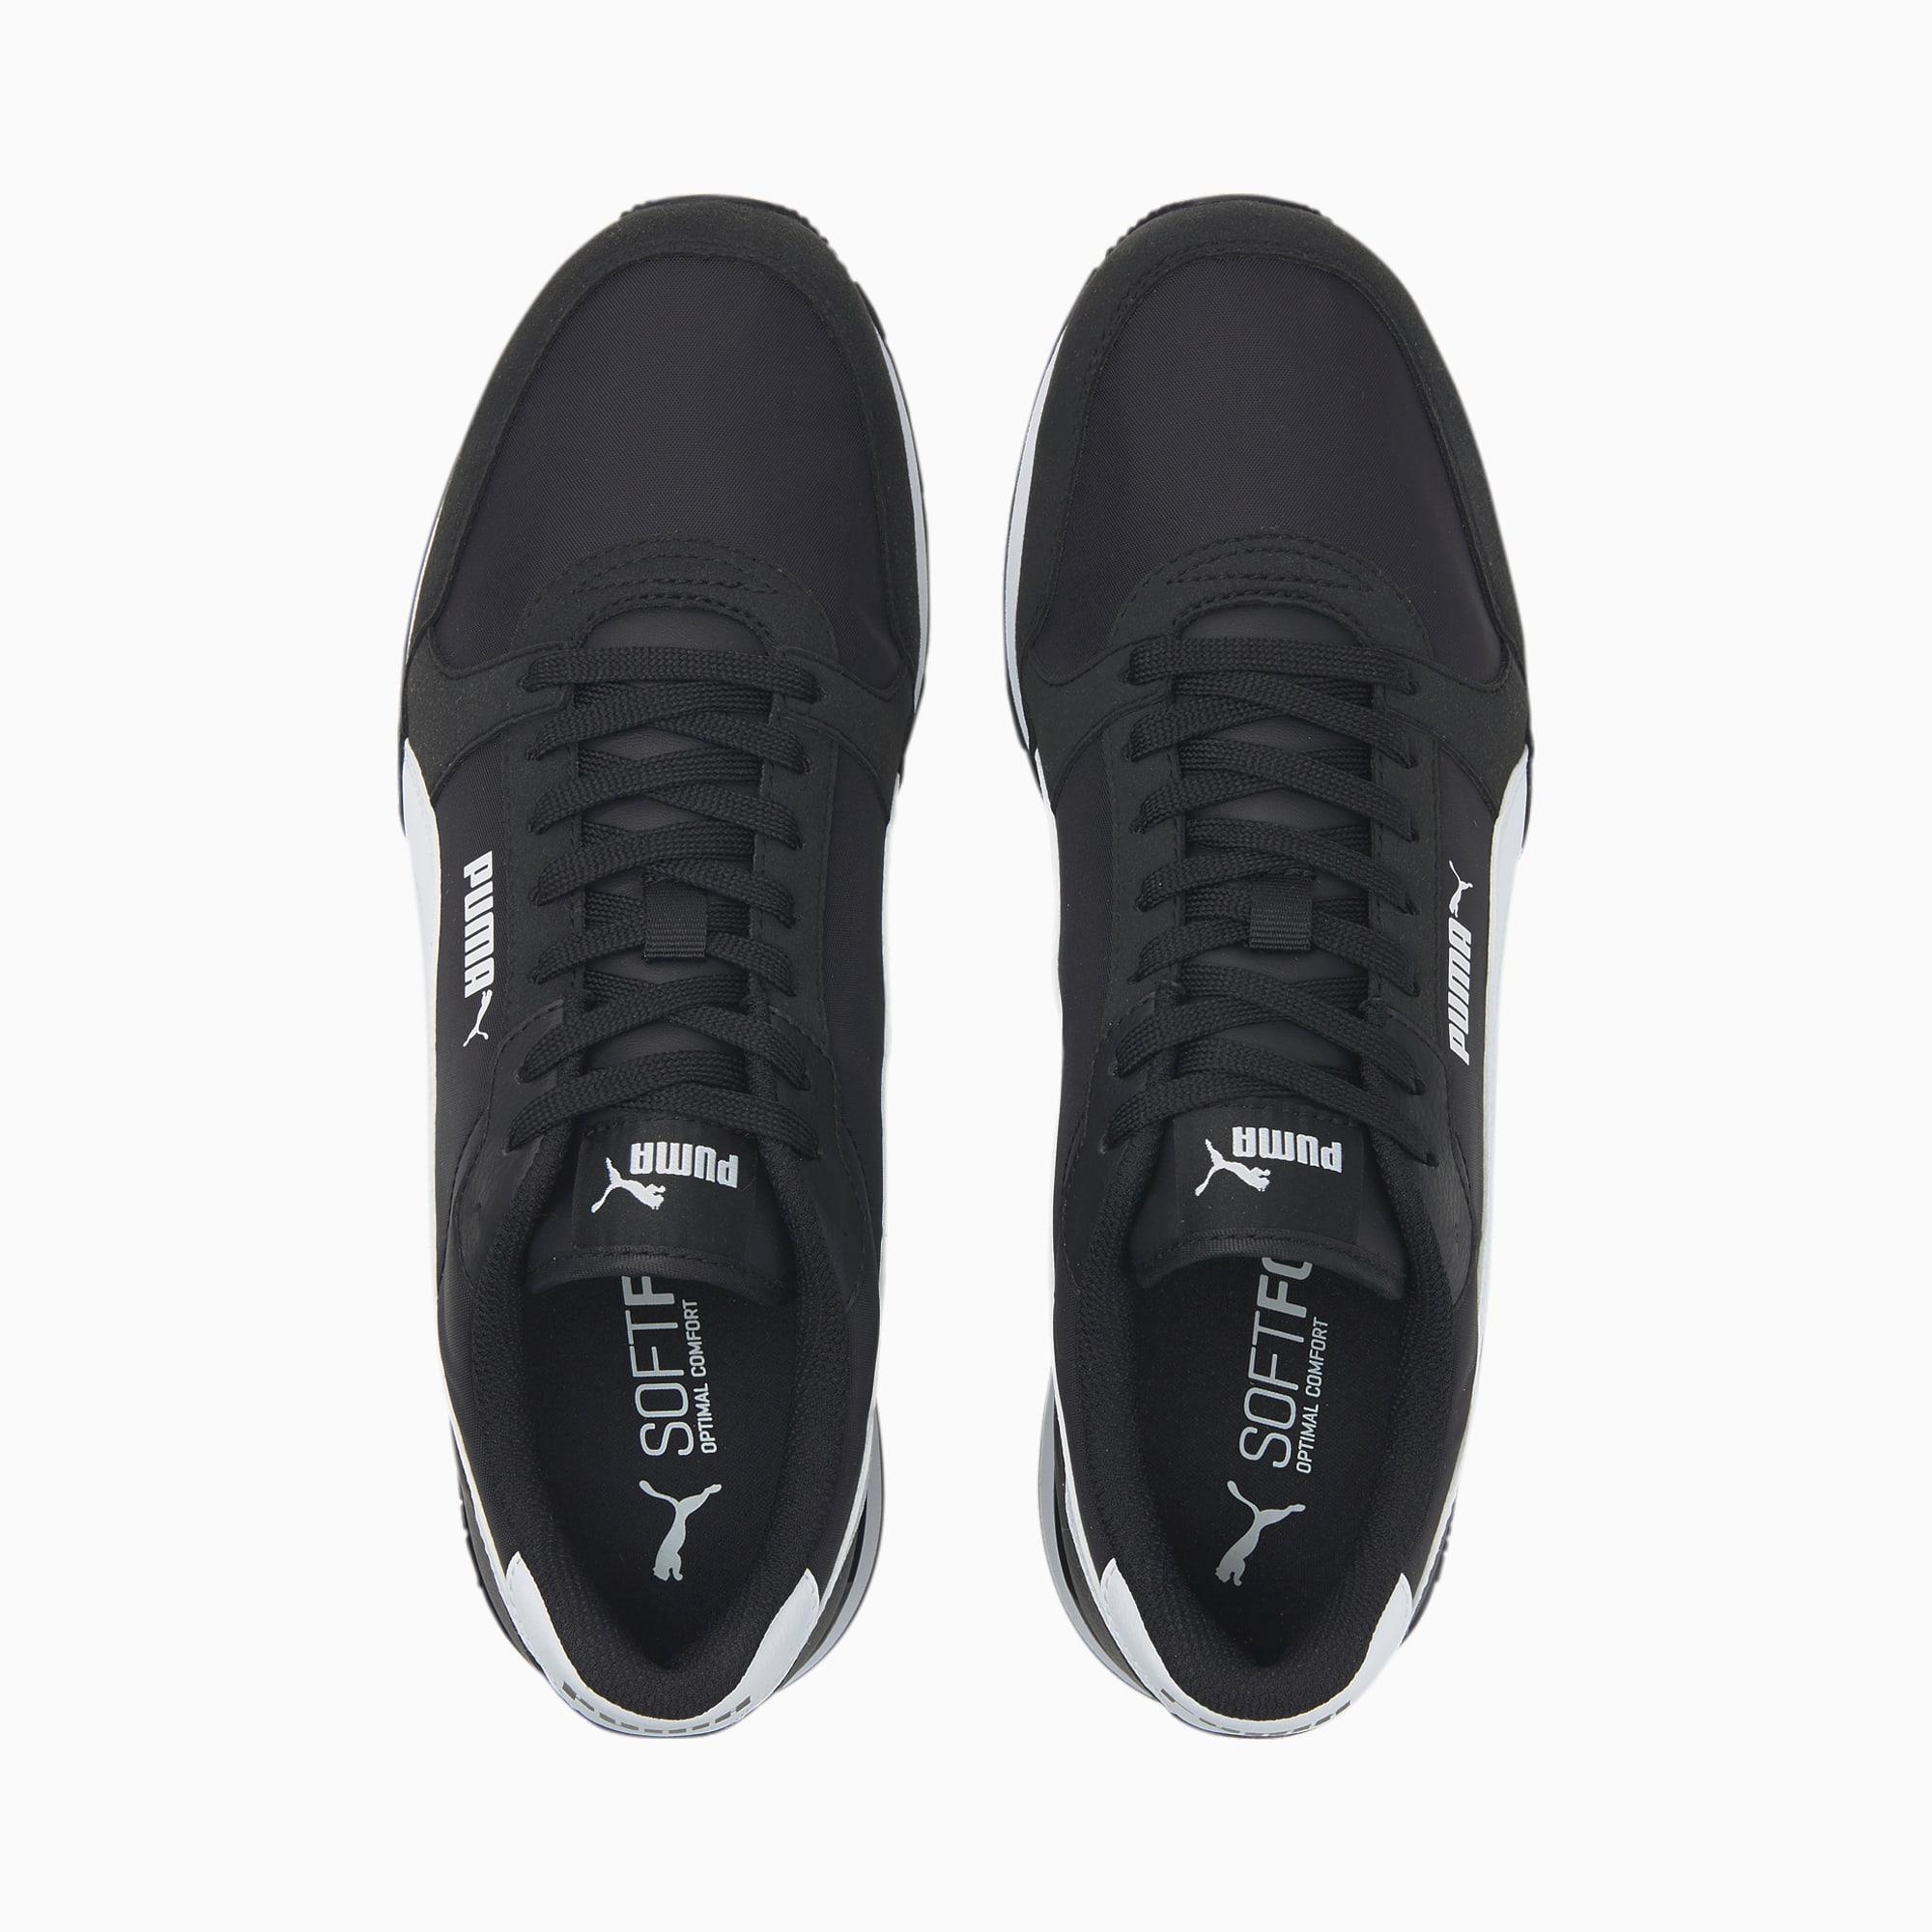 Puma St Runner V3 Men's Sneakers, Black/White, 11.5